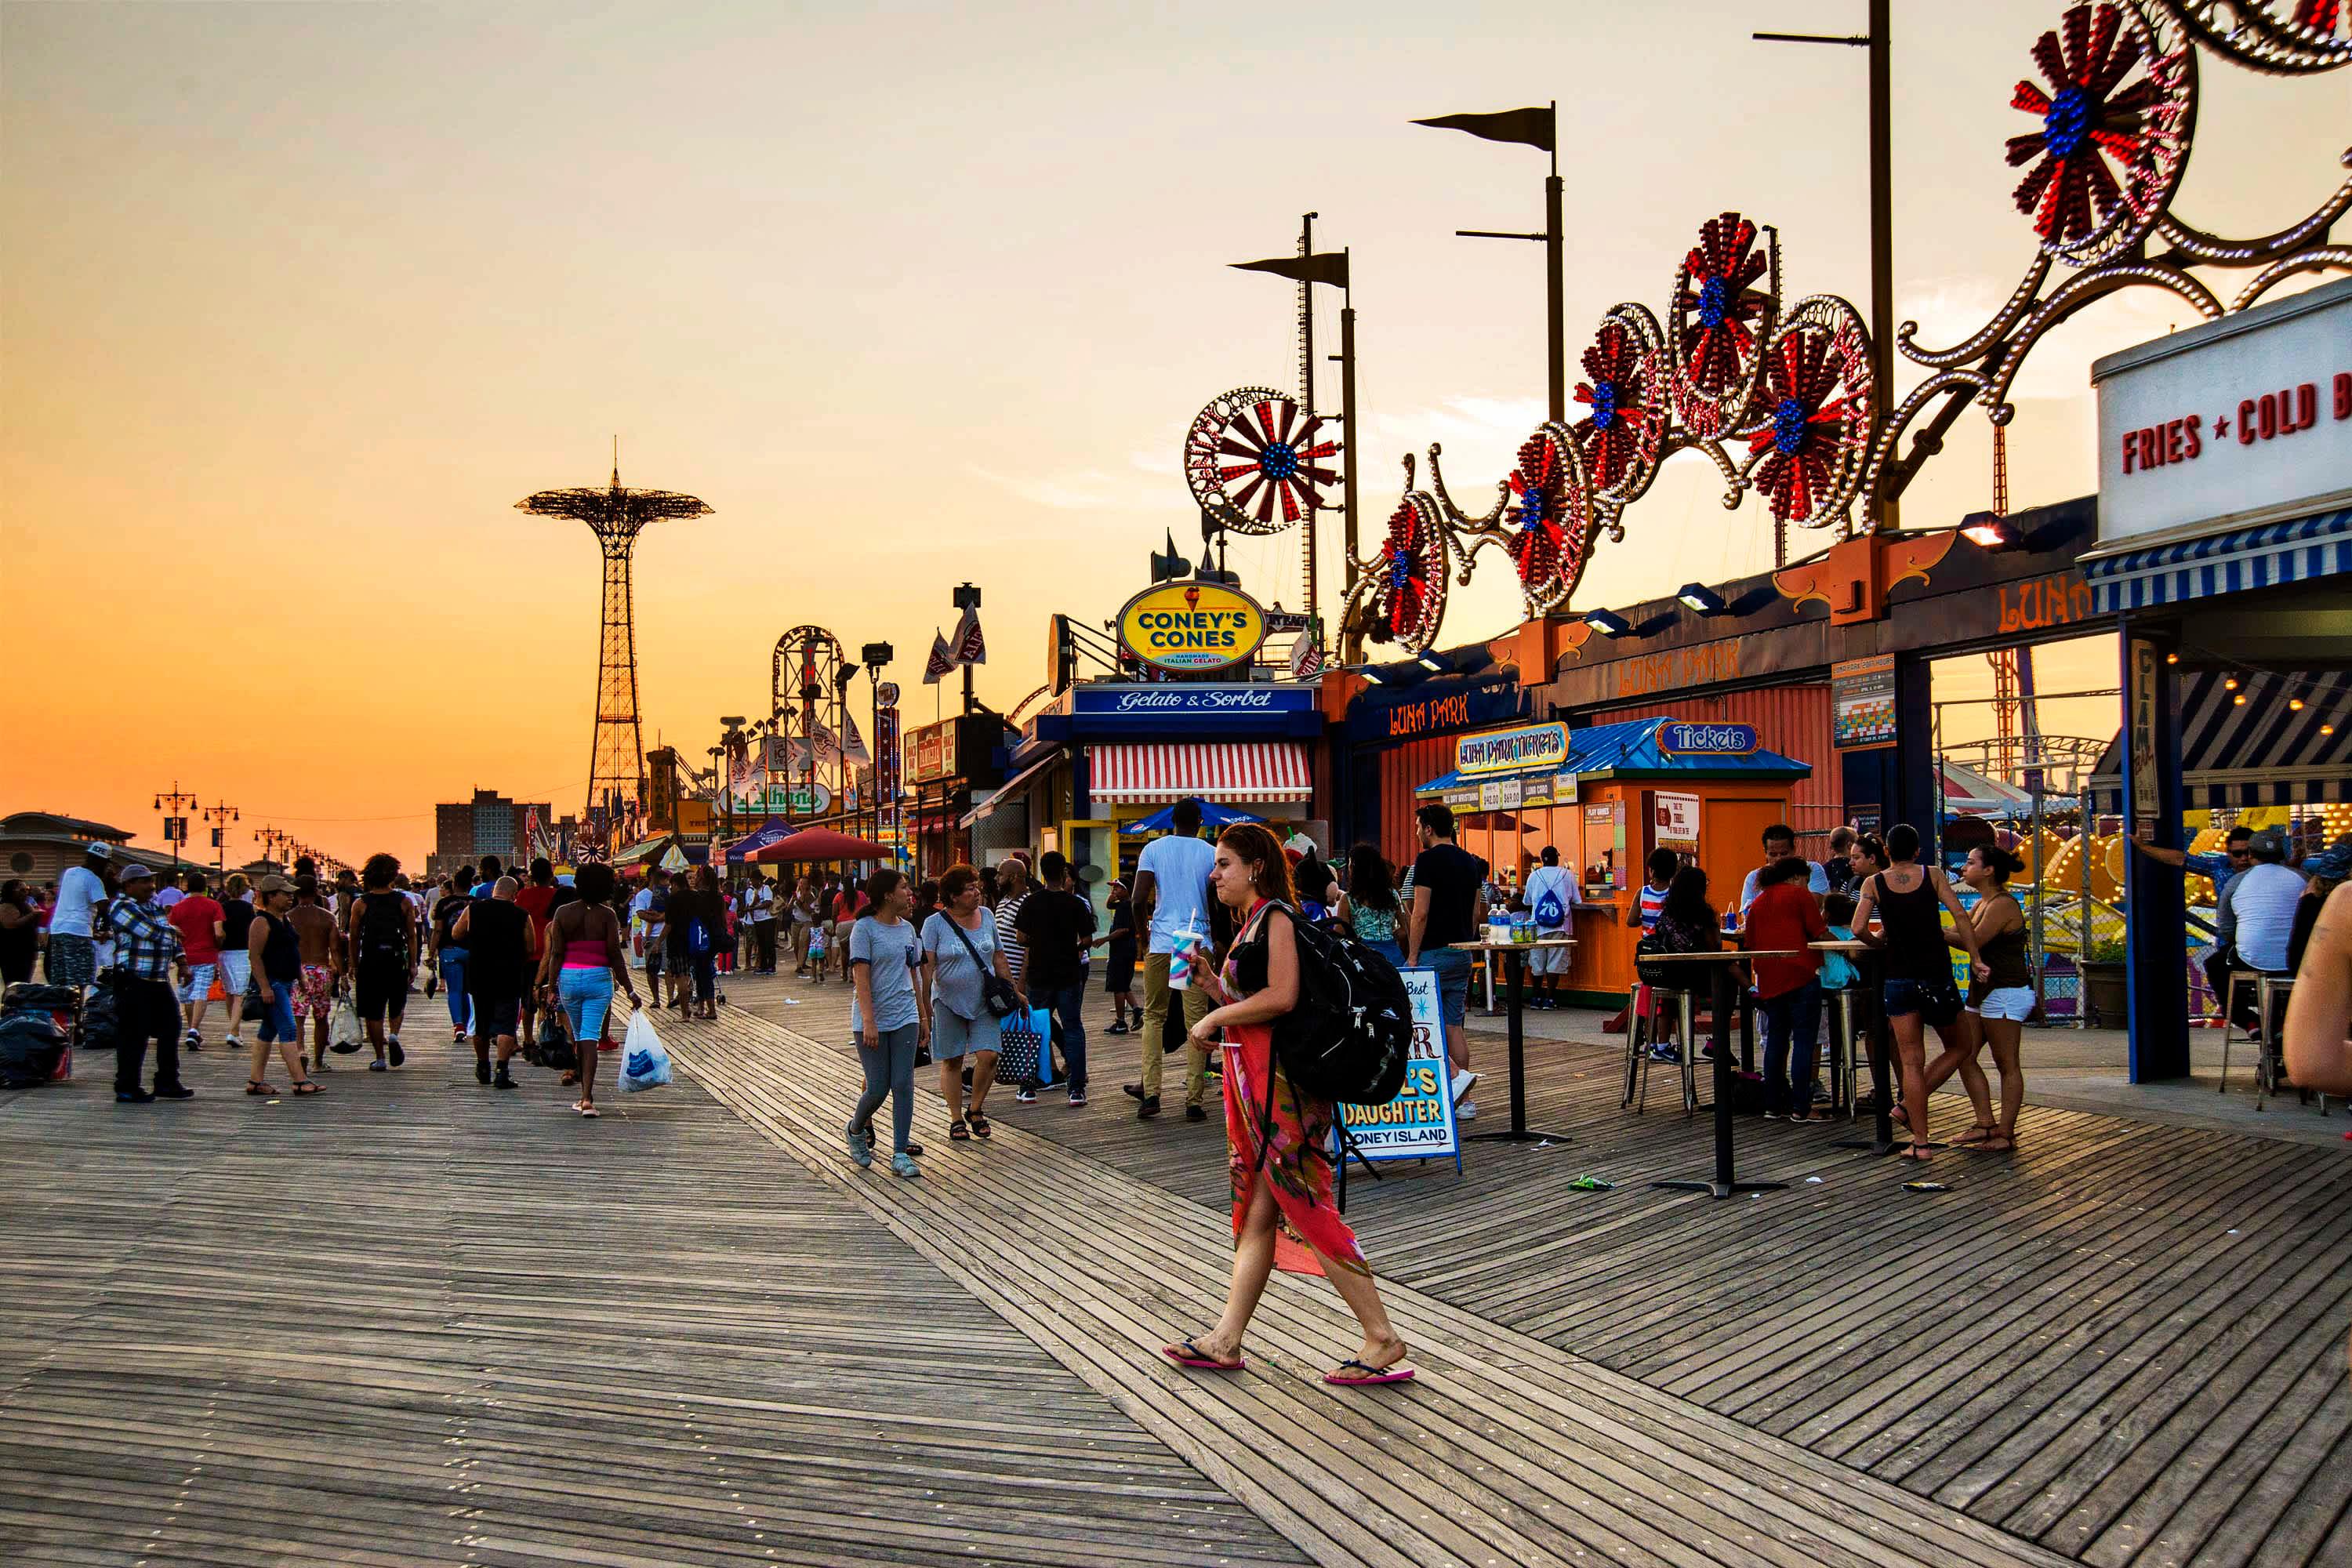 People walking on Coney Island Boardwalk, Brooklyn